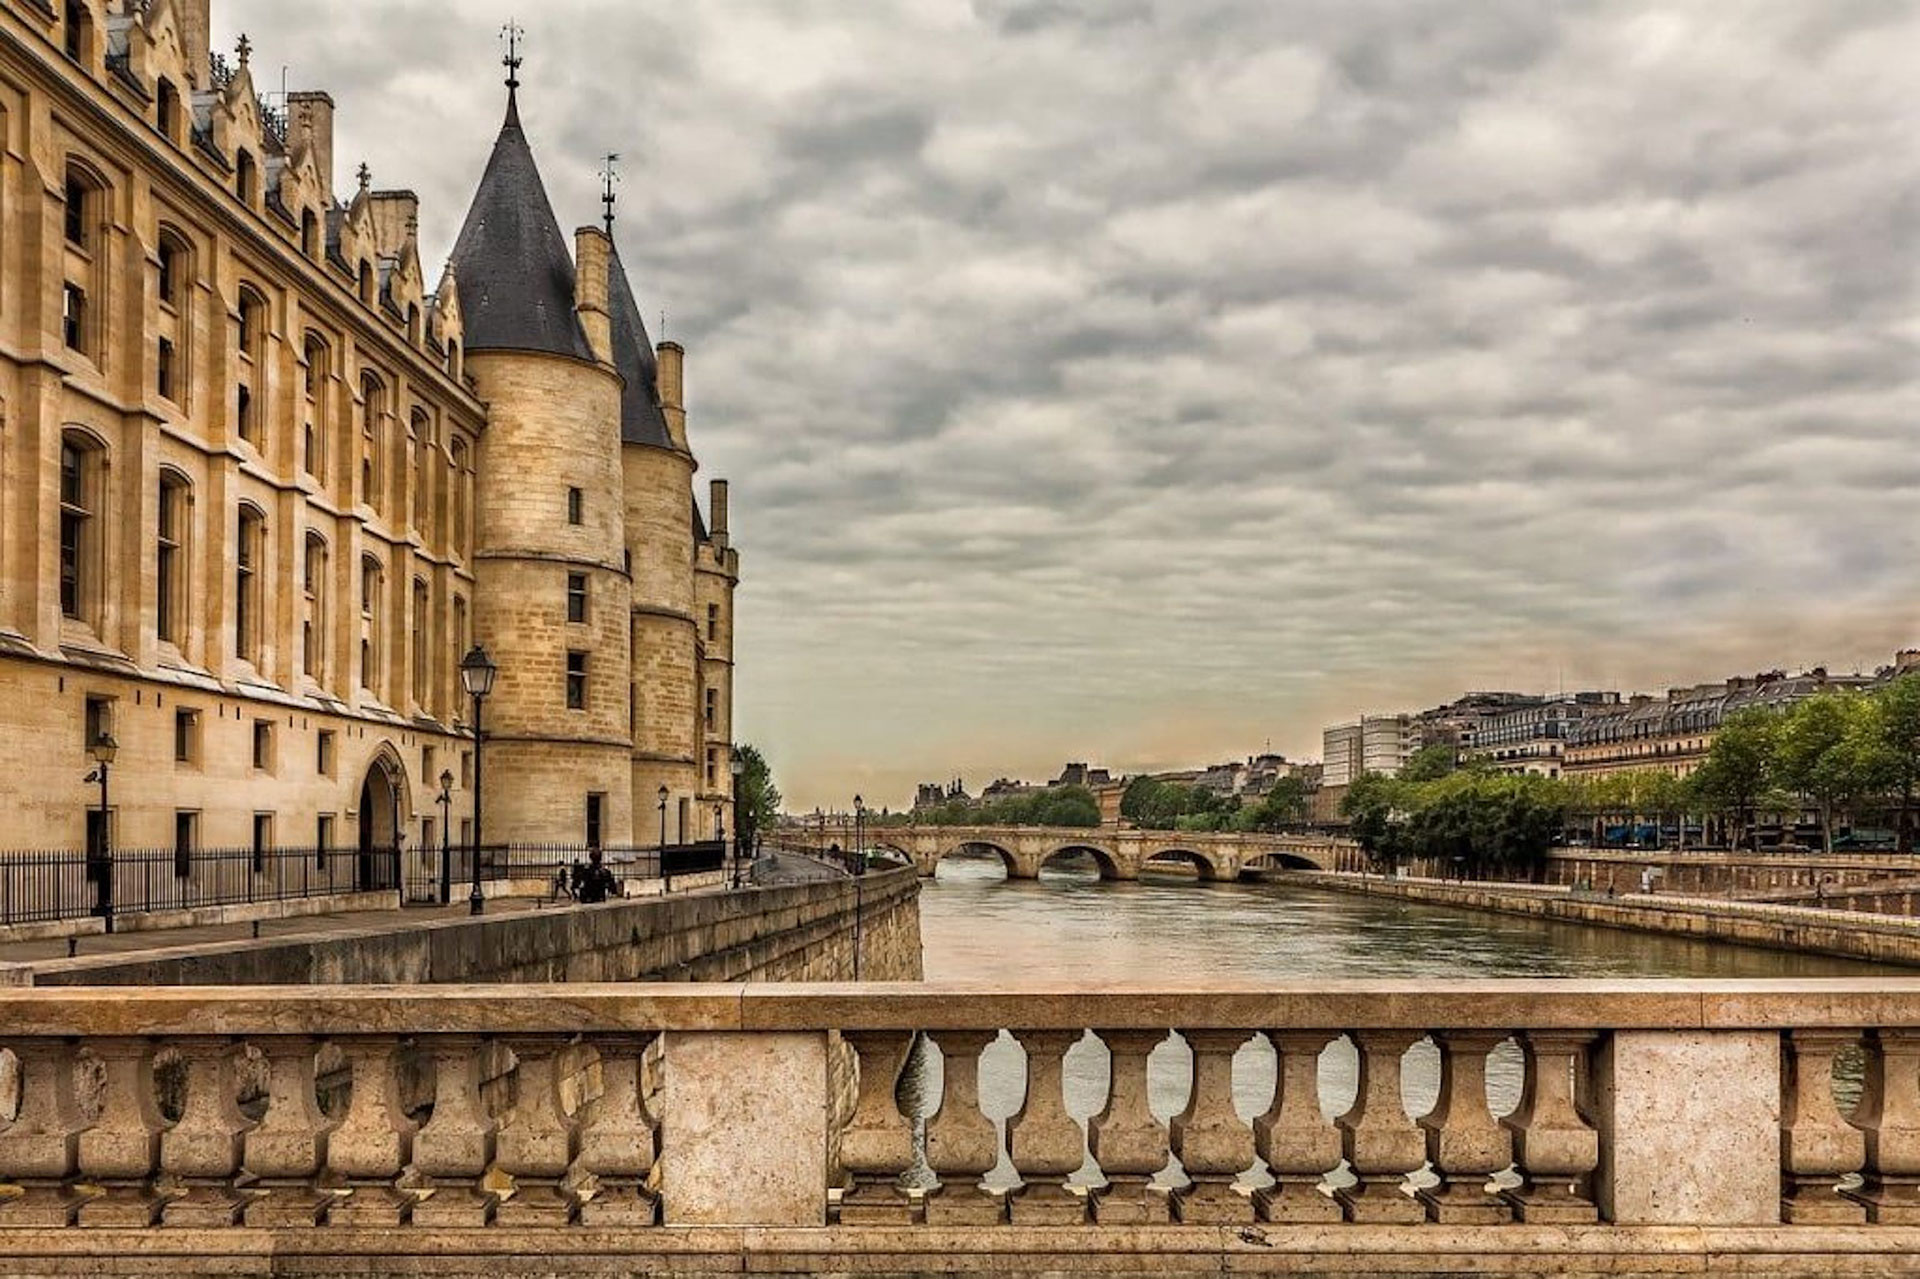 Hay secretos y lugares particulares para conocer este otro perfil de la ciudad de París